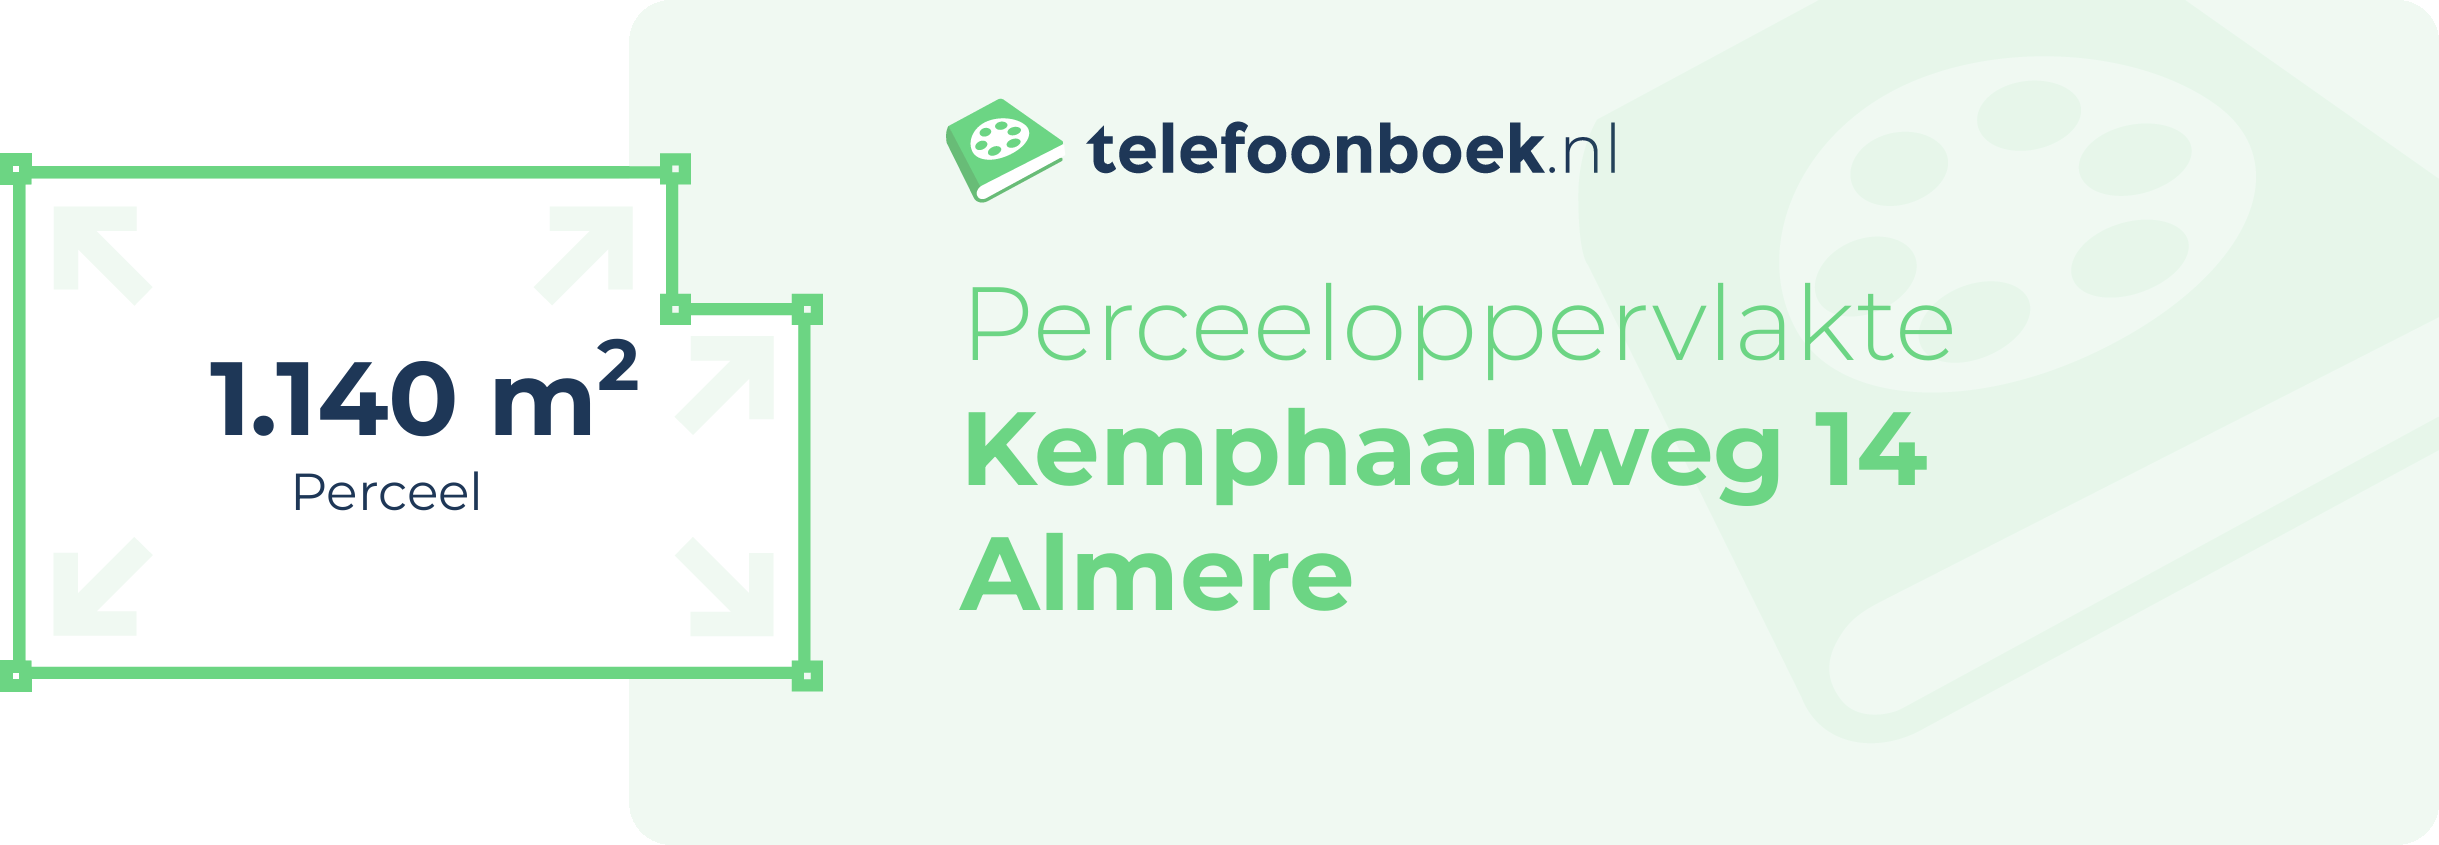 Perceeloppervlakte Kemphaanweg 14 Almere